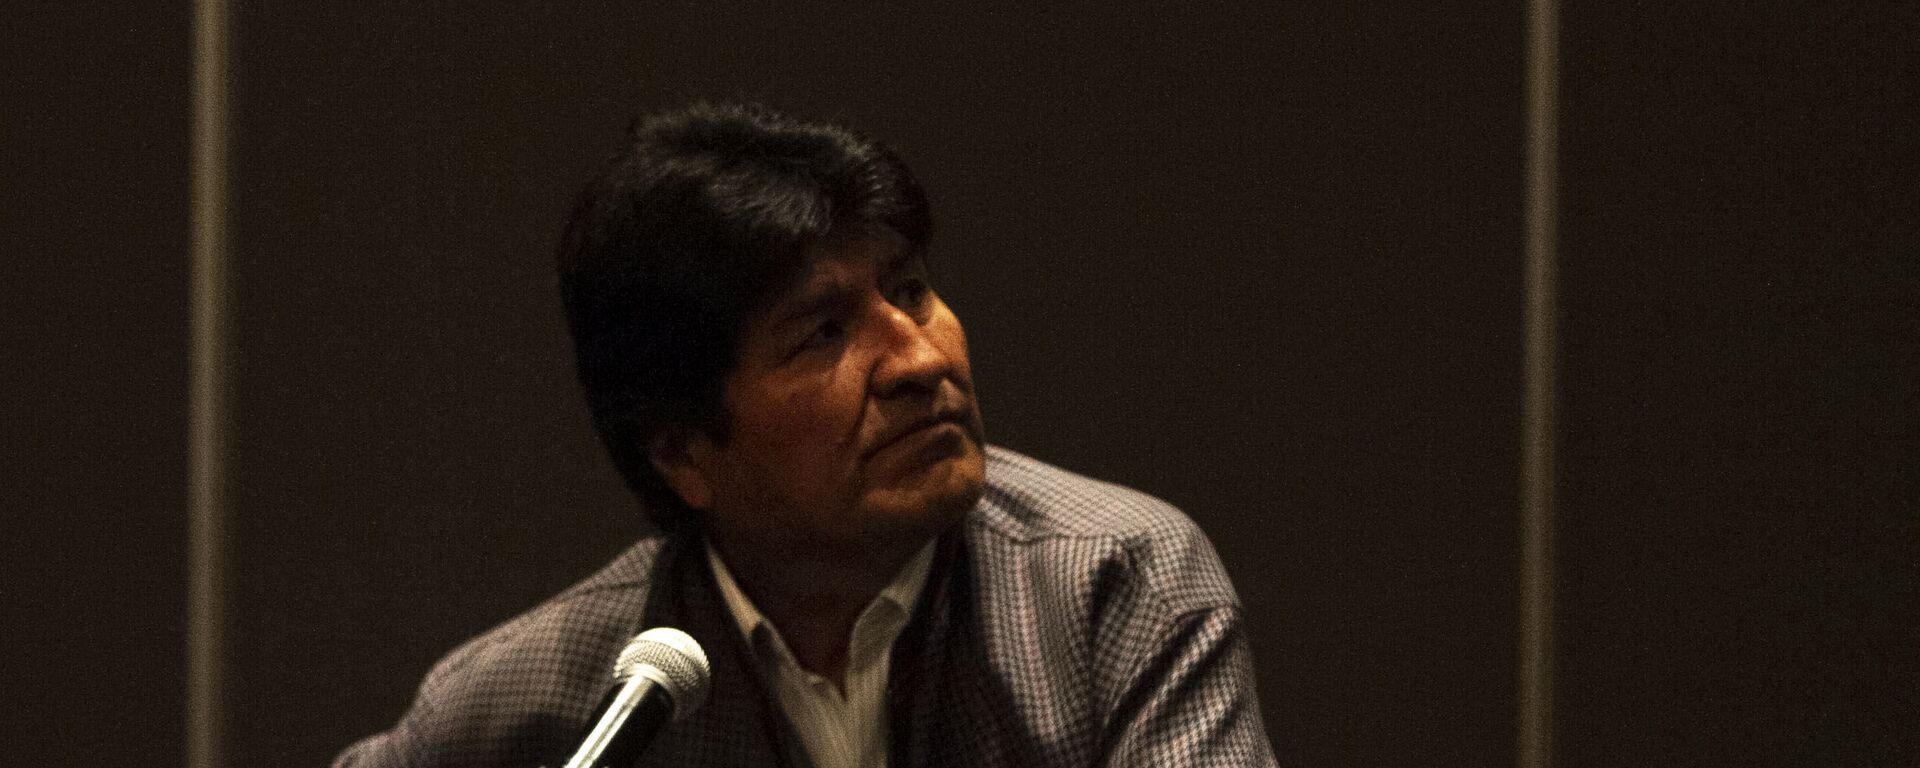 Evo Morales ofrece una rueda de prensa en la Ciudad de México, el 20 de noviembre de 2019 - Sputnik Mundo, 1920, 14.07.2021